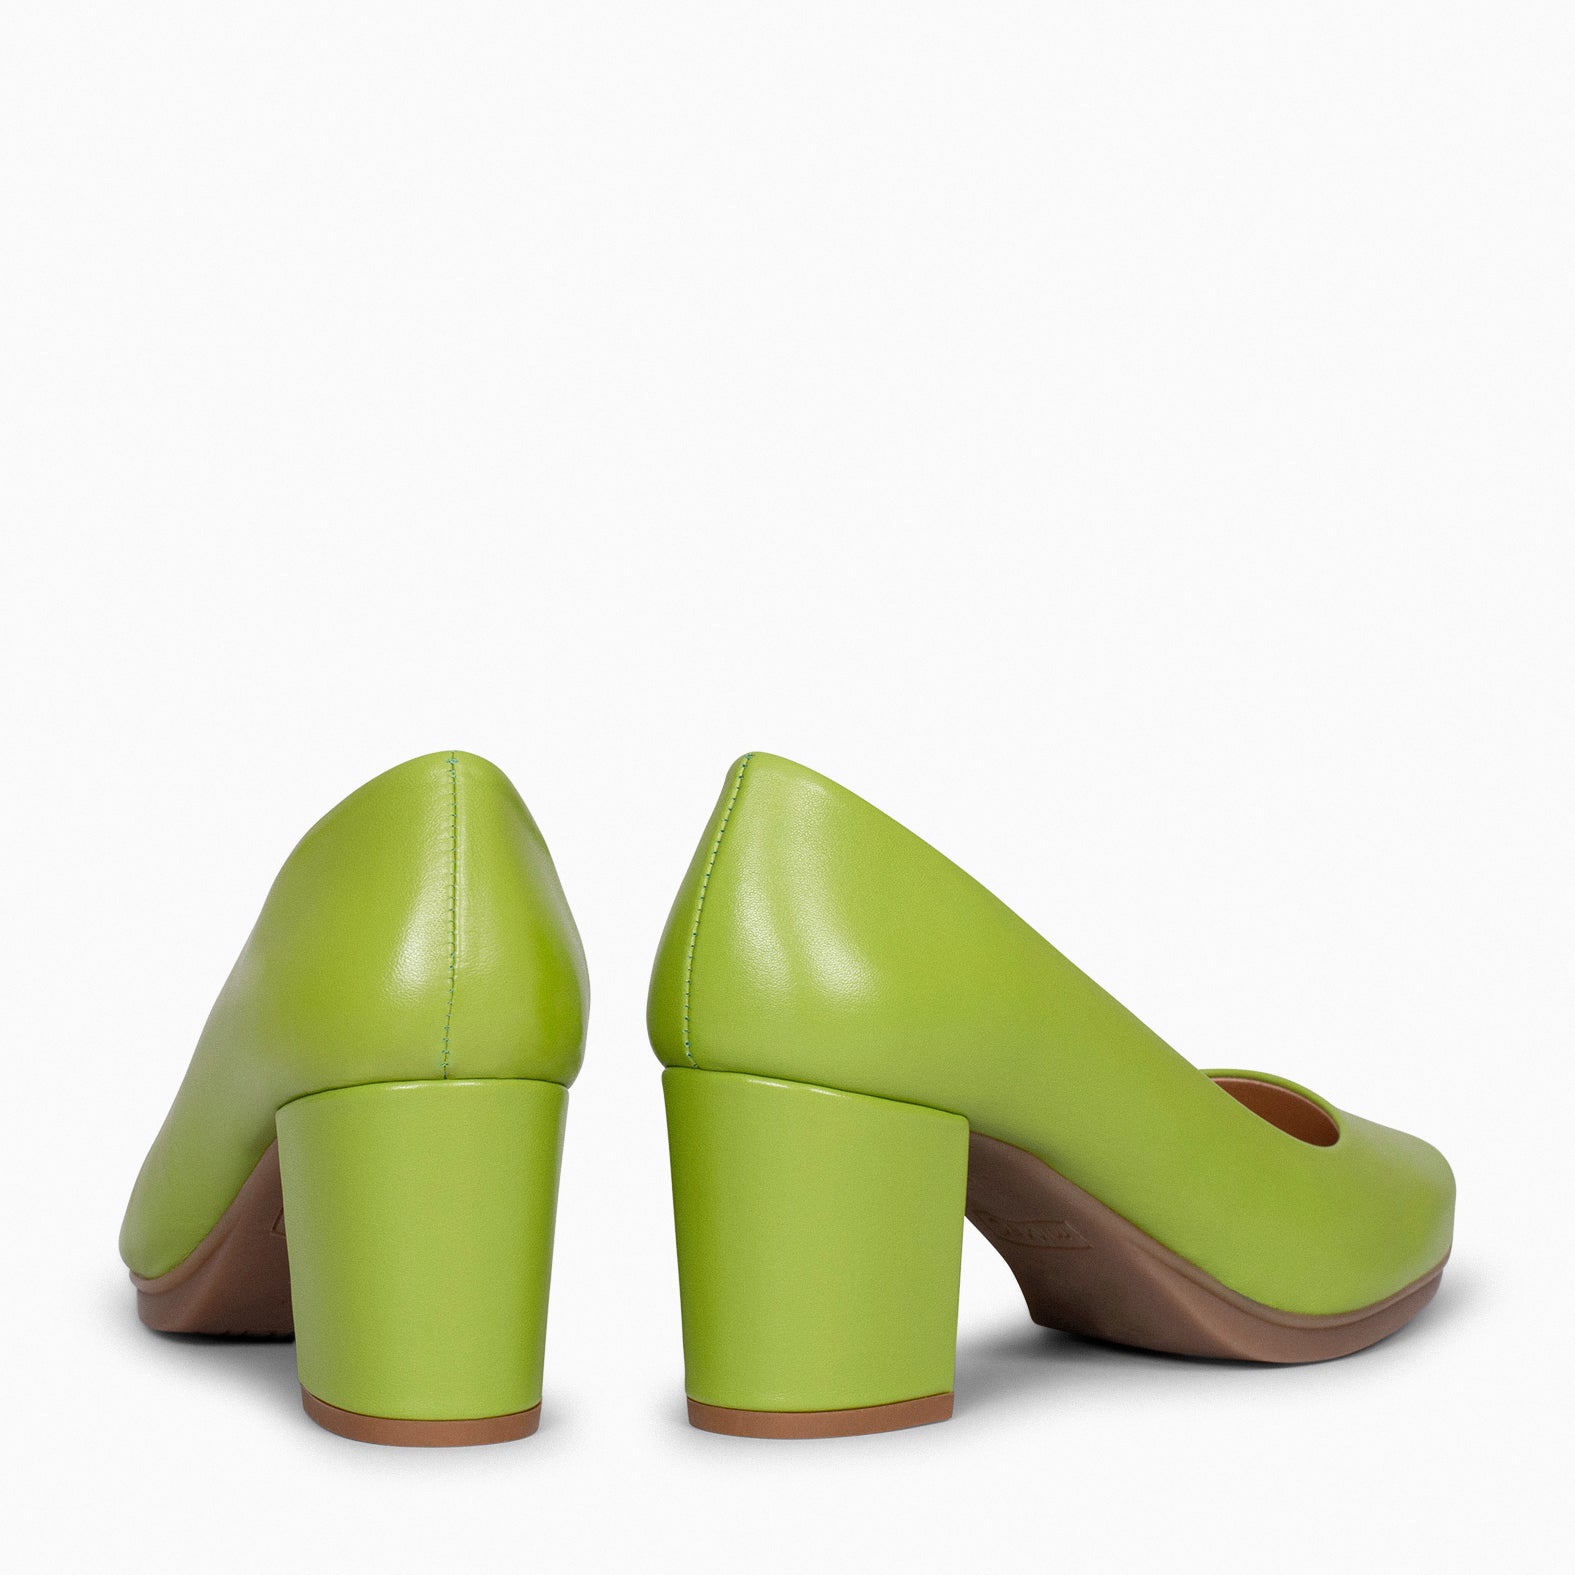 URBAN S SALON – PISTACHIO nappa leather mid heel